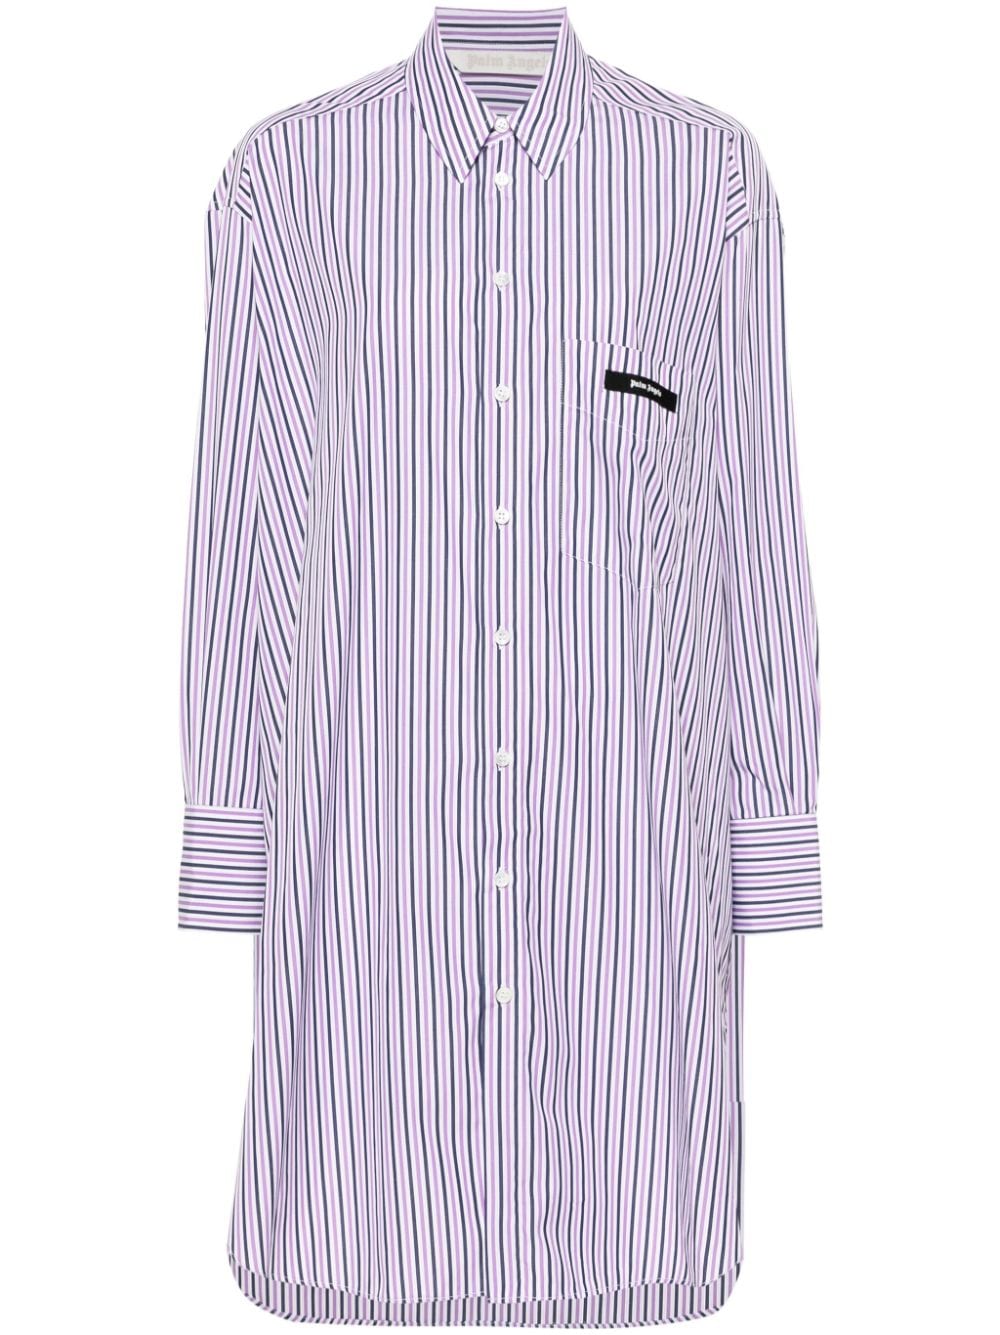 Palm Angels Logo棉质衬衫裙 In Purple,white